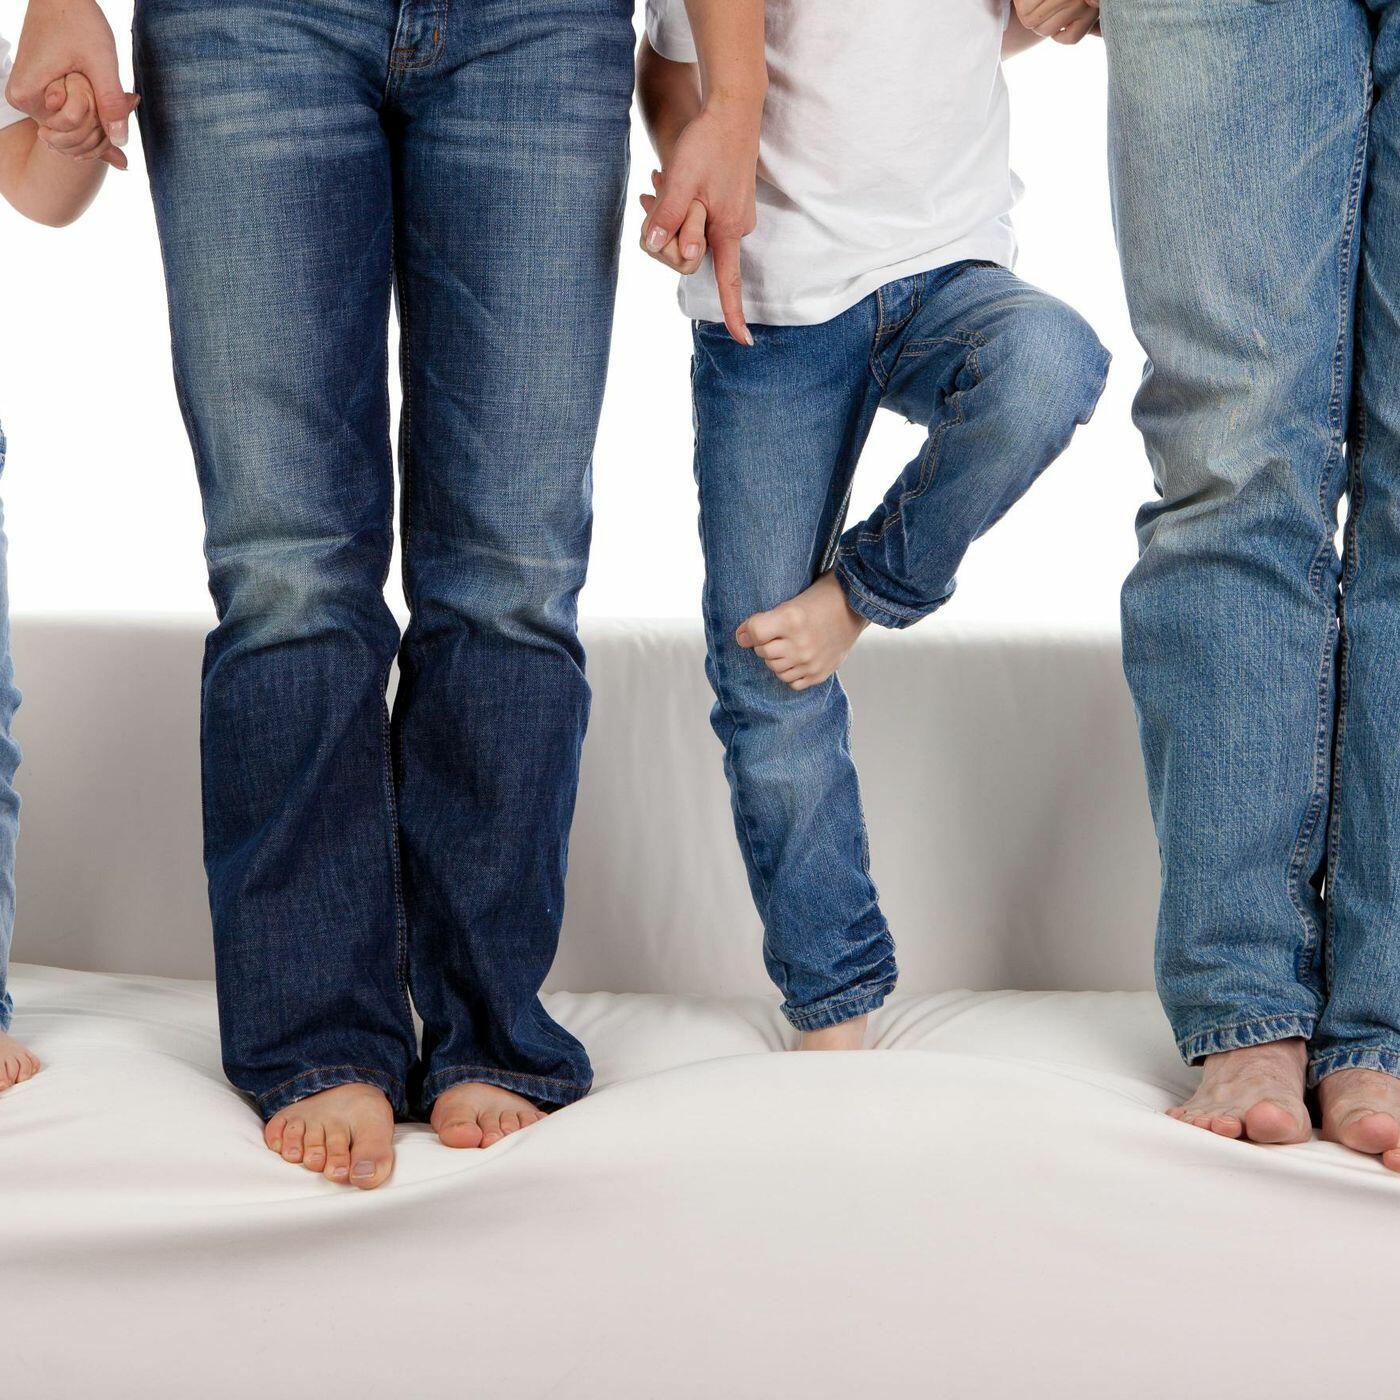 I like wearing jeans. Семья в джинсах. Семейная фотосессия в джинсах. Фотосессия семьи в джинсе. Фотосессия в джинсовом стиле семейная.